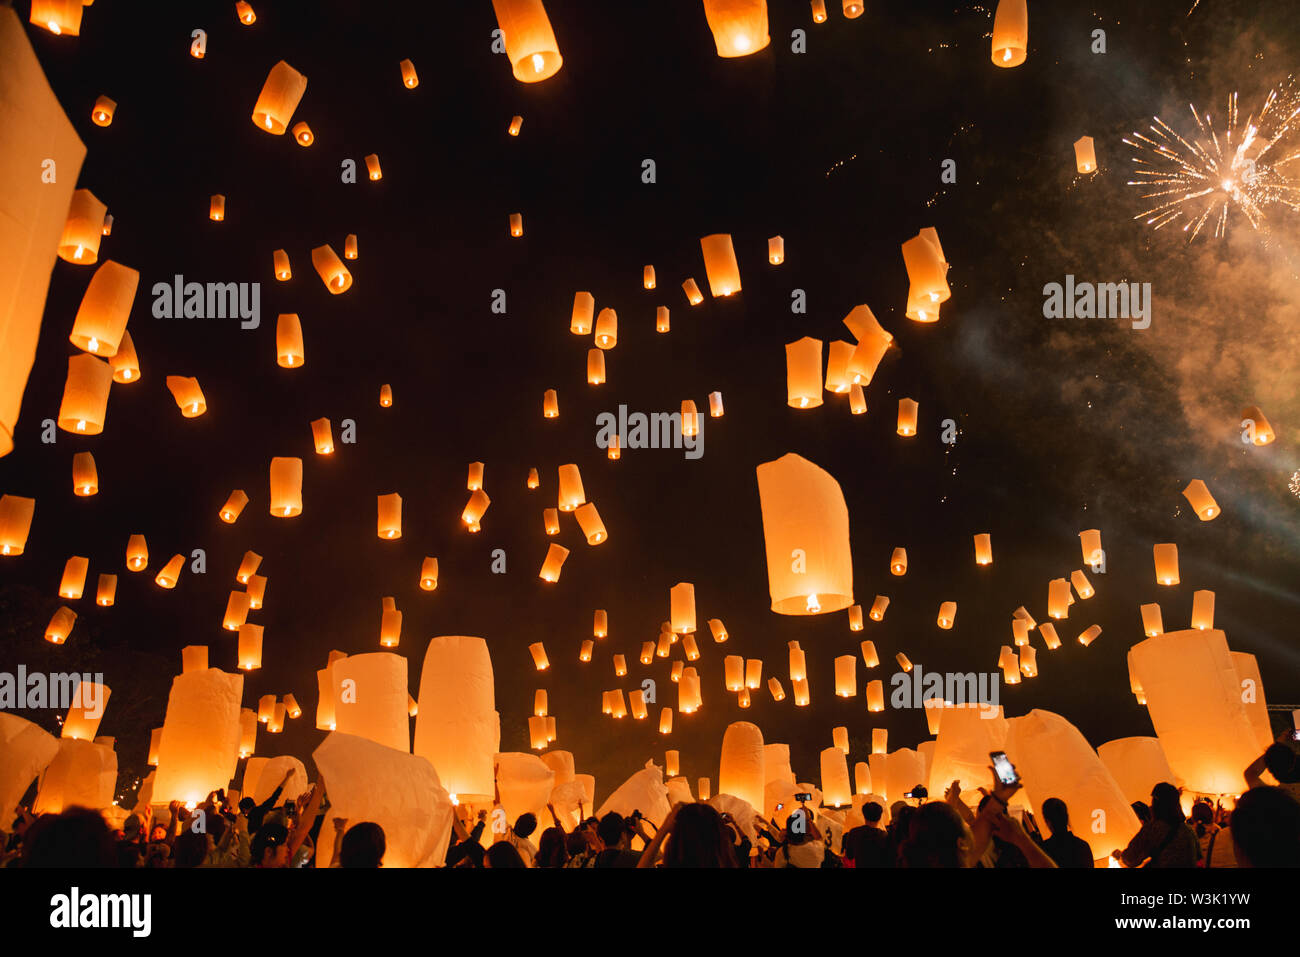 Festival de Loy Krathong, fiesta de año nuevo tailandés con linternas flotantes en el cielo nocturno de liberación Foto de stock